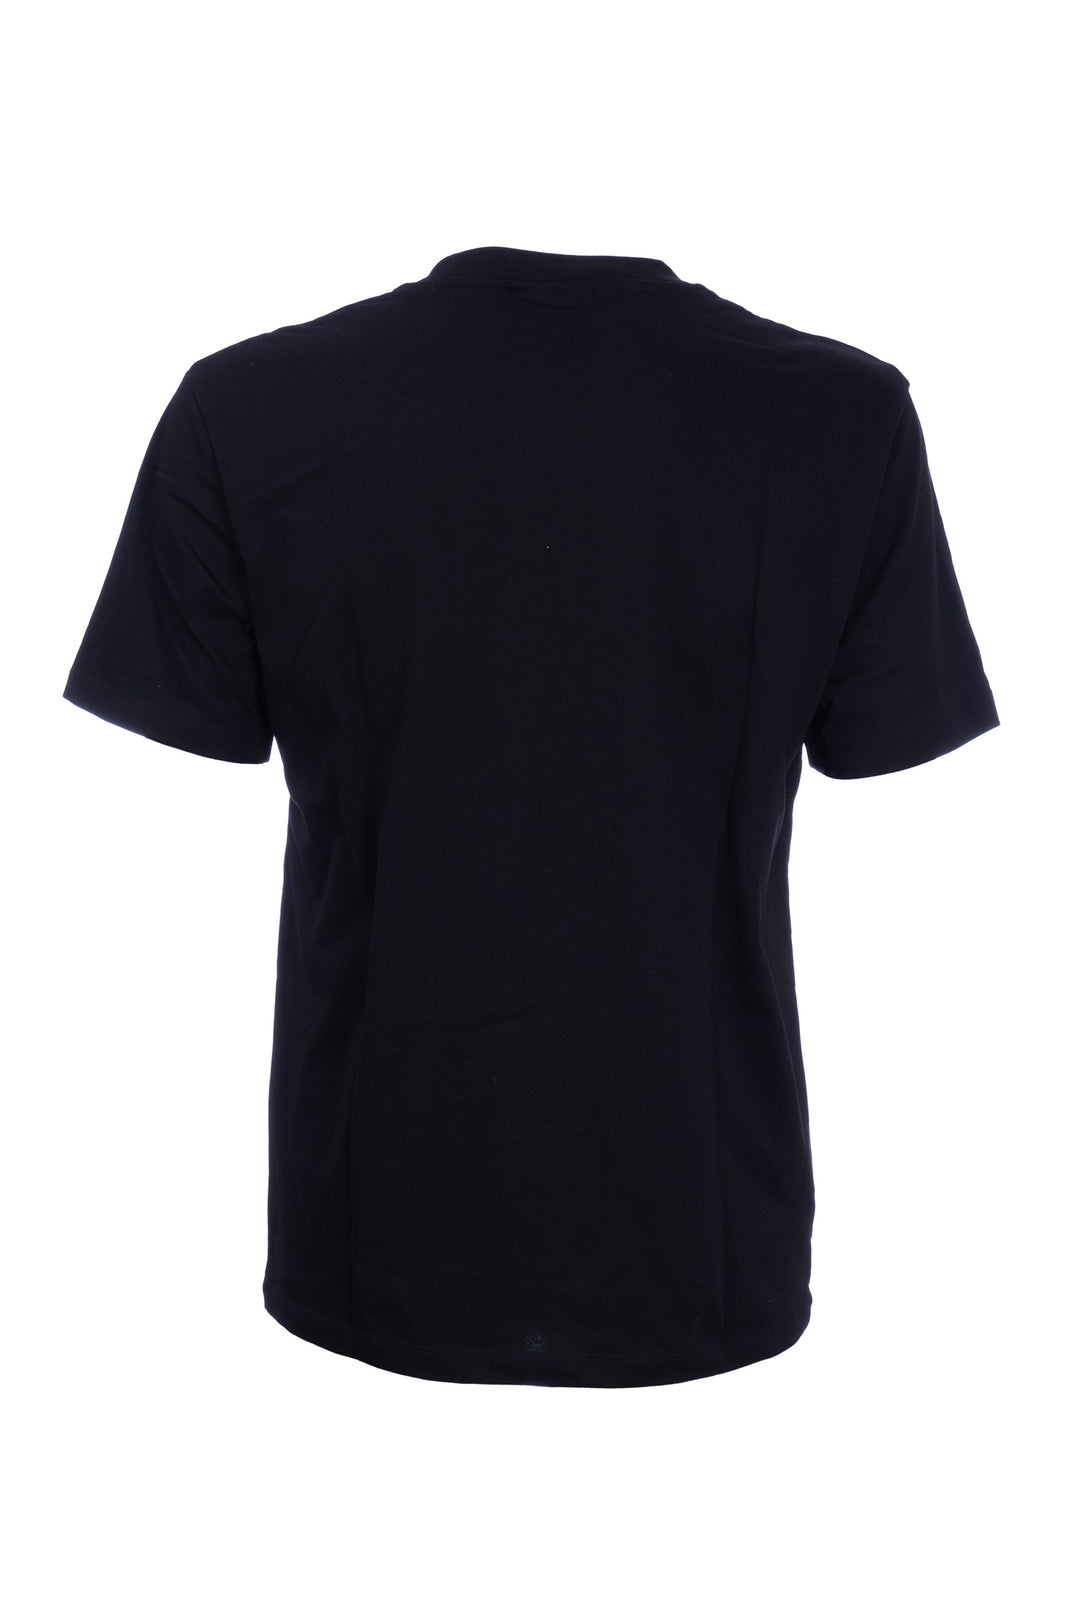 GAELLE T-shirt nera in cotone con logo grande stampato in contrasto - Mancinelli 1954